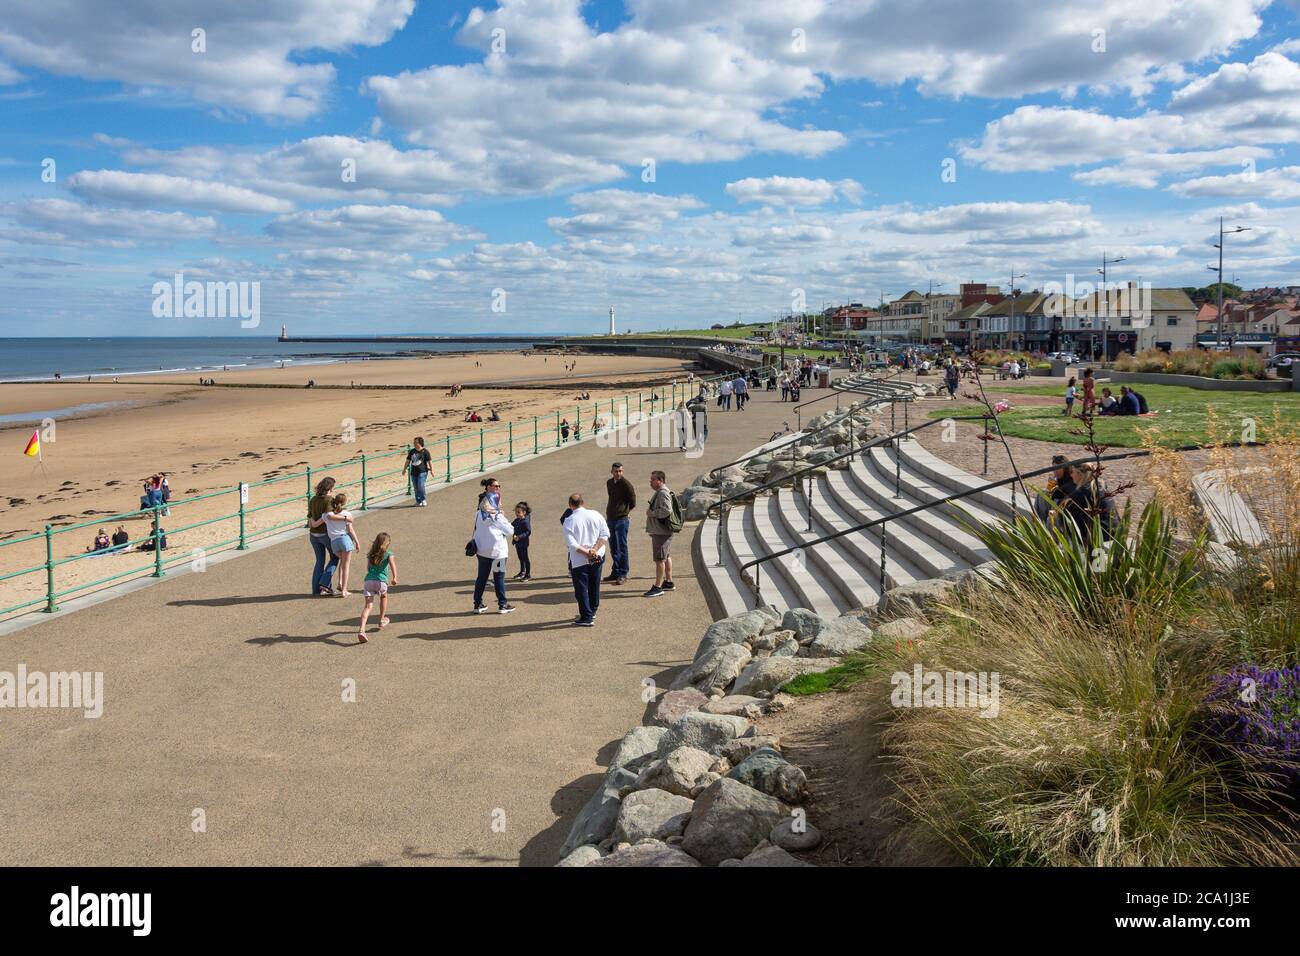 Promenade et front de mer très fréquentés, Seaburn, Sunderland, Tyne and Wear, Angleterre, Royaume-Uni Banque D'Images